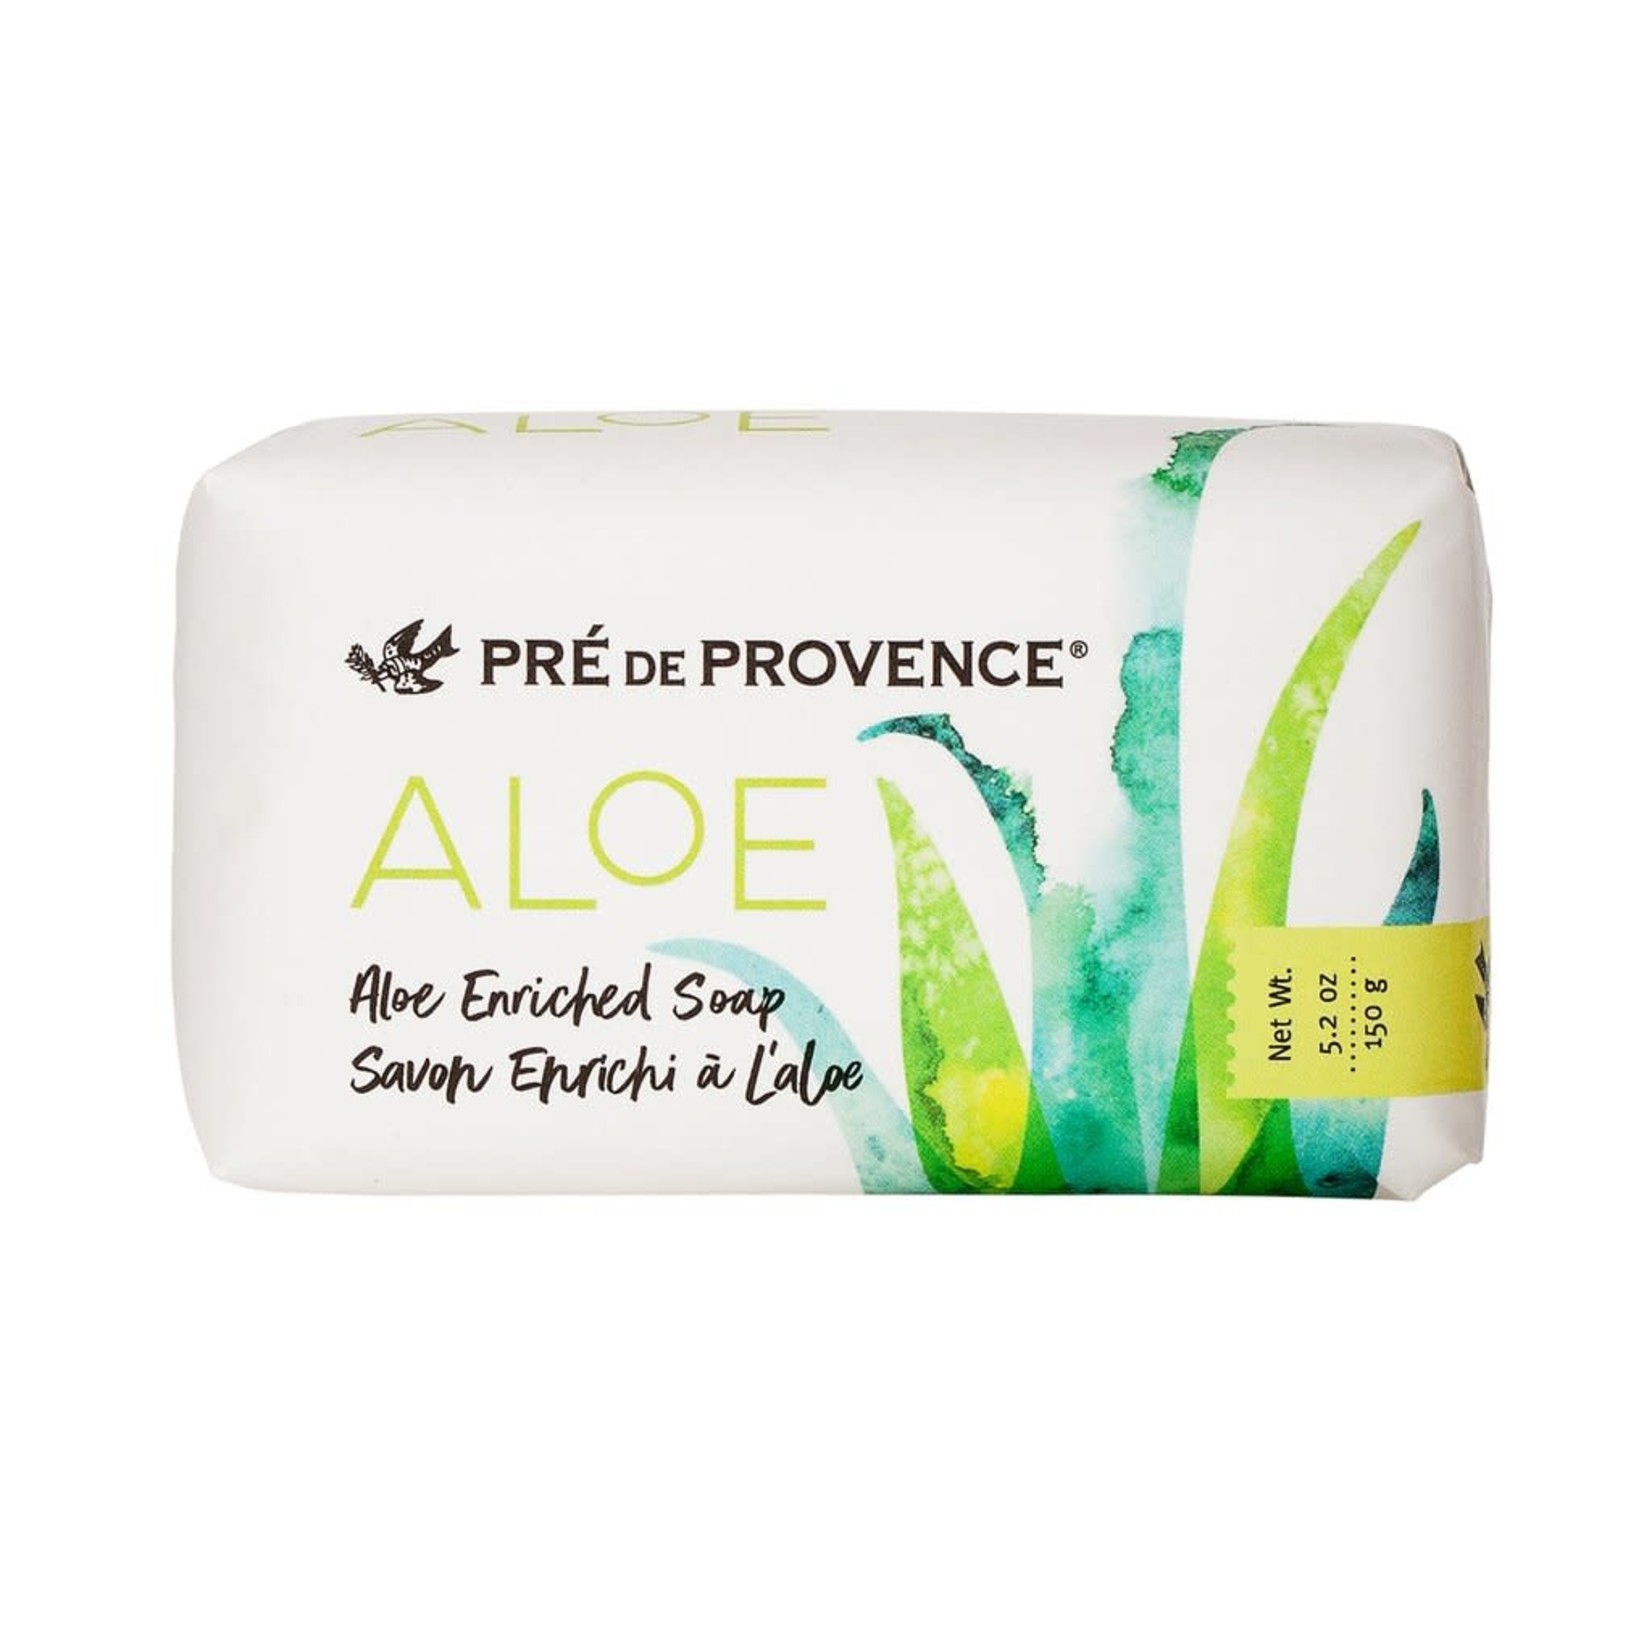 Pre de Provence Aloe Enriched Soap 150g